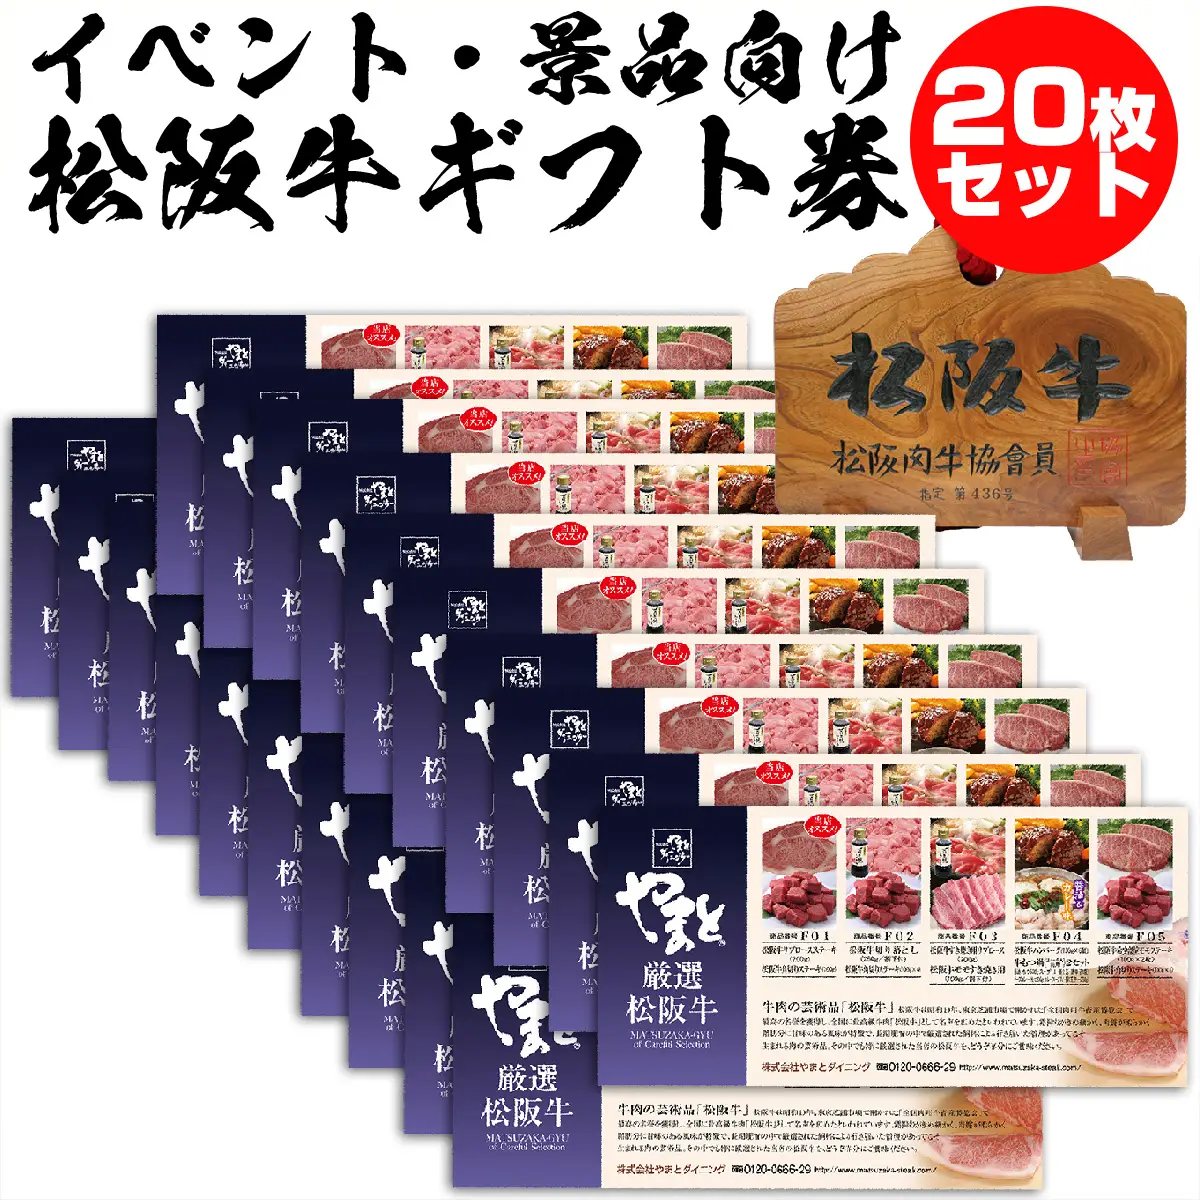 松阪牛お肉のギフト券Aタイプ 20枚セット